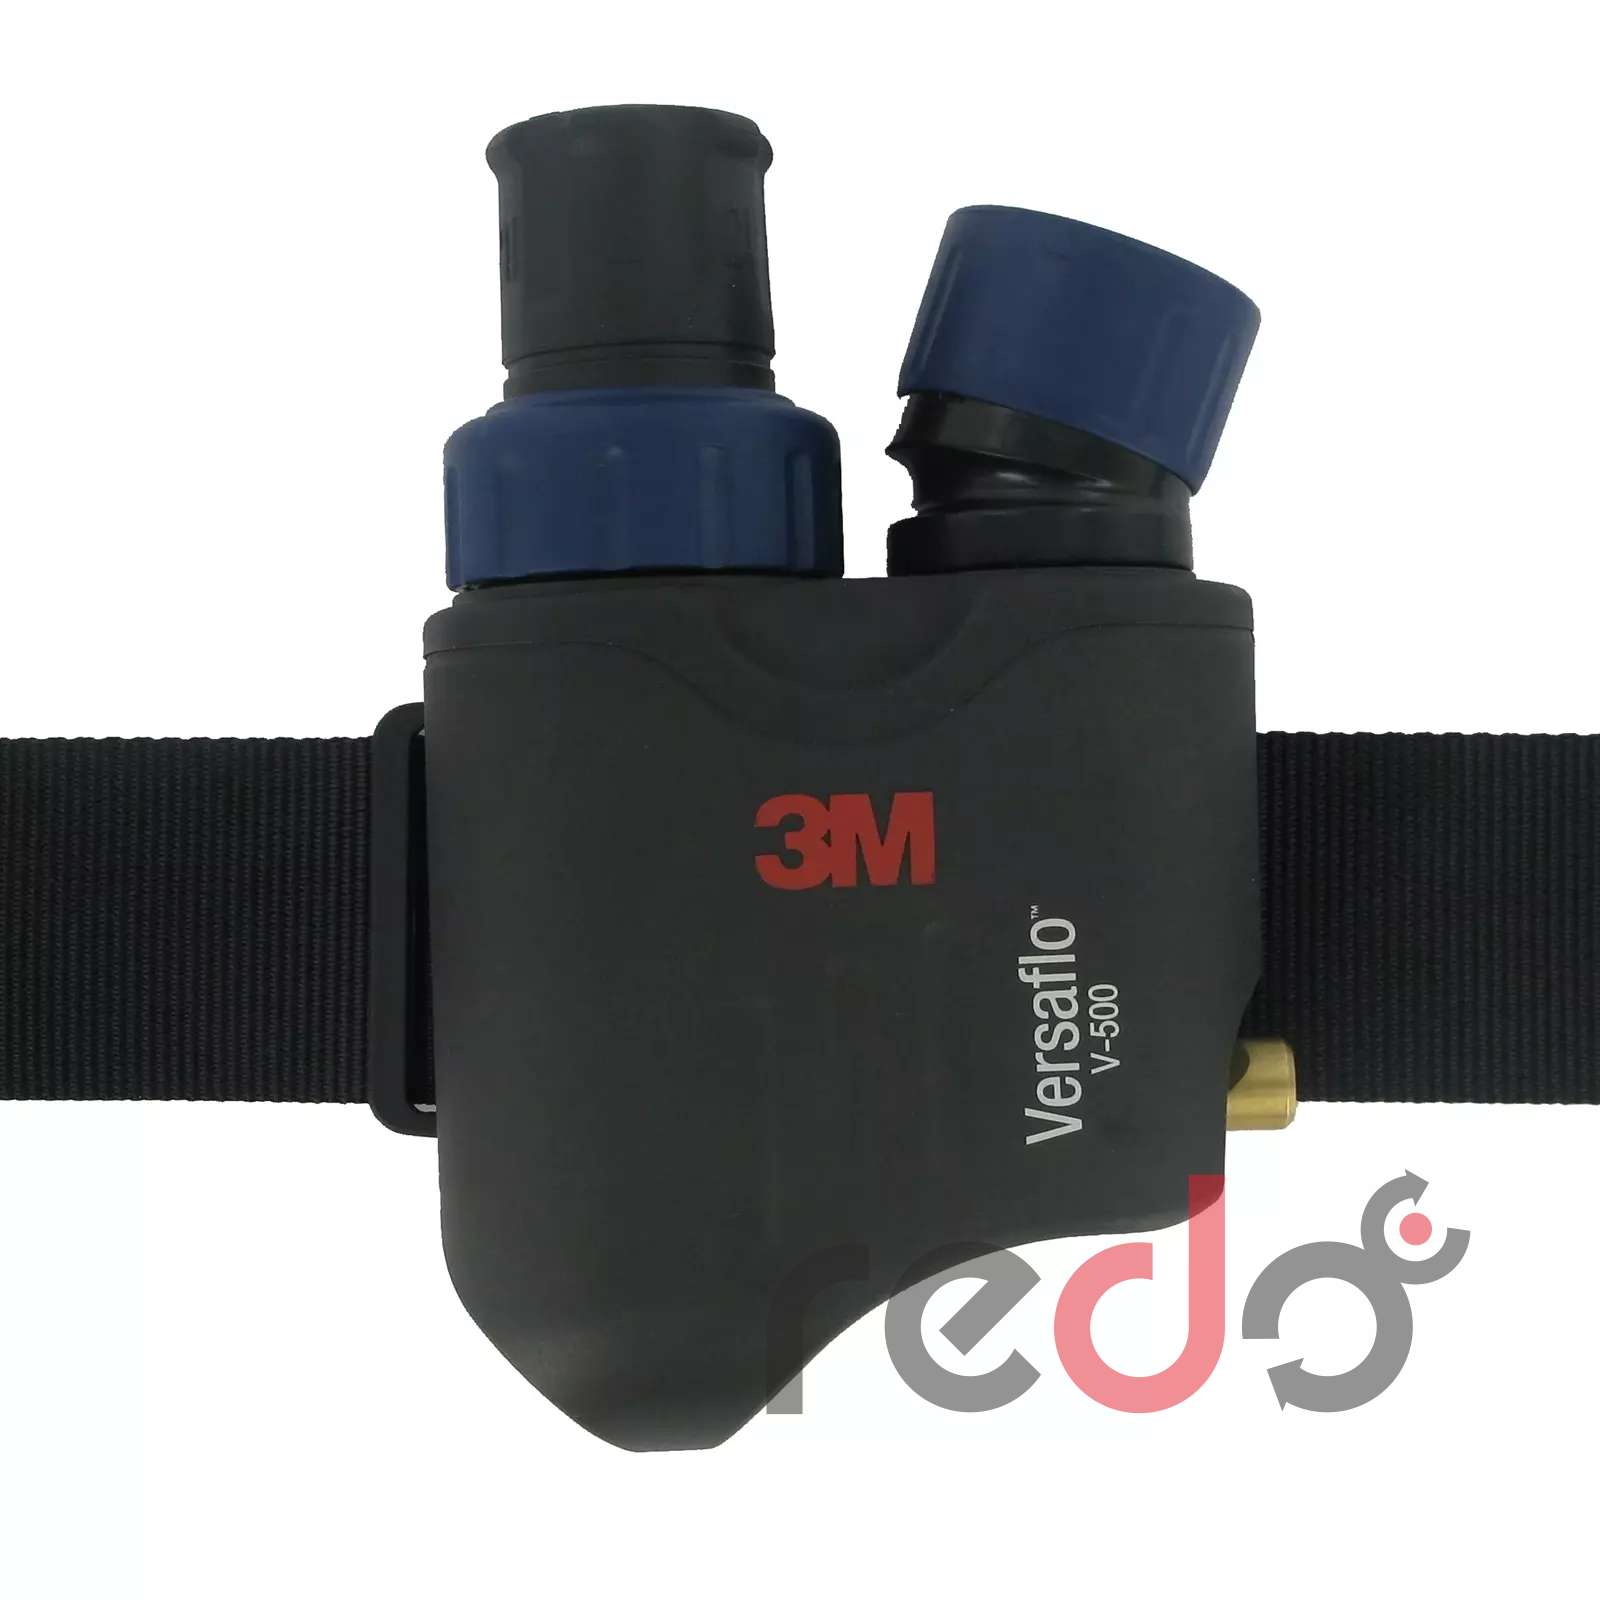 3M™ Versaflo™ V-500E aparat wężowy sprężonego powietrza